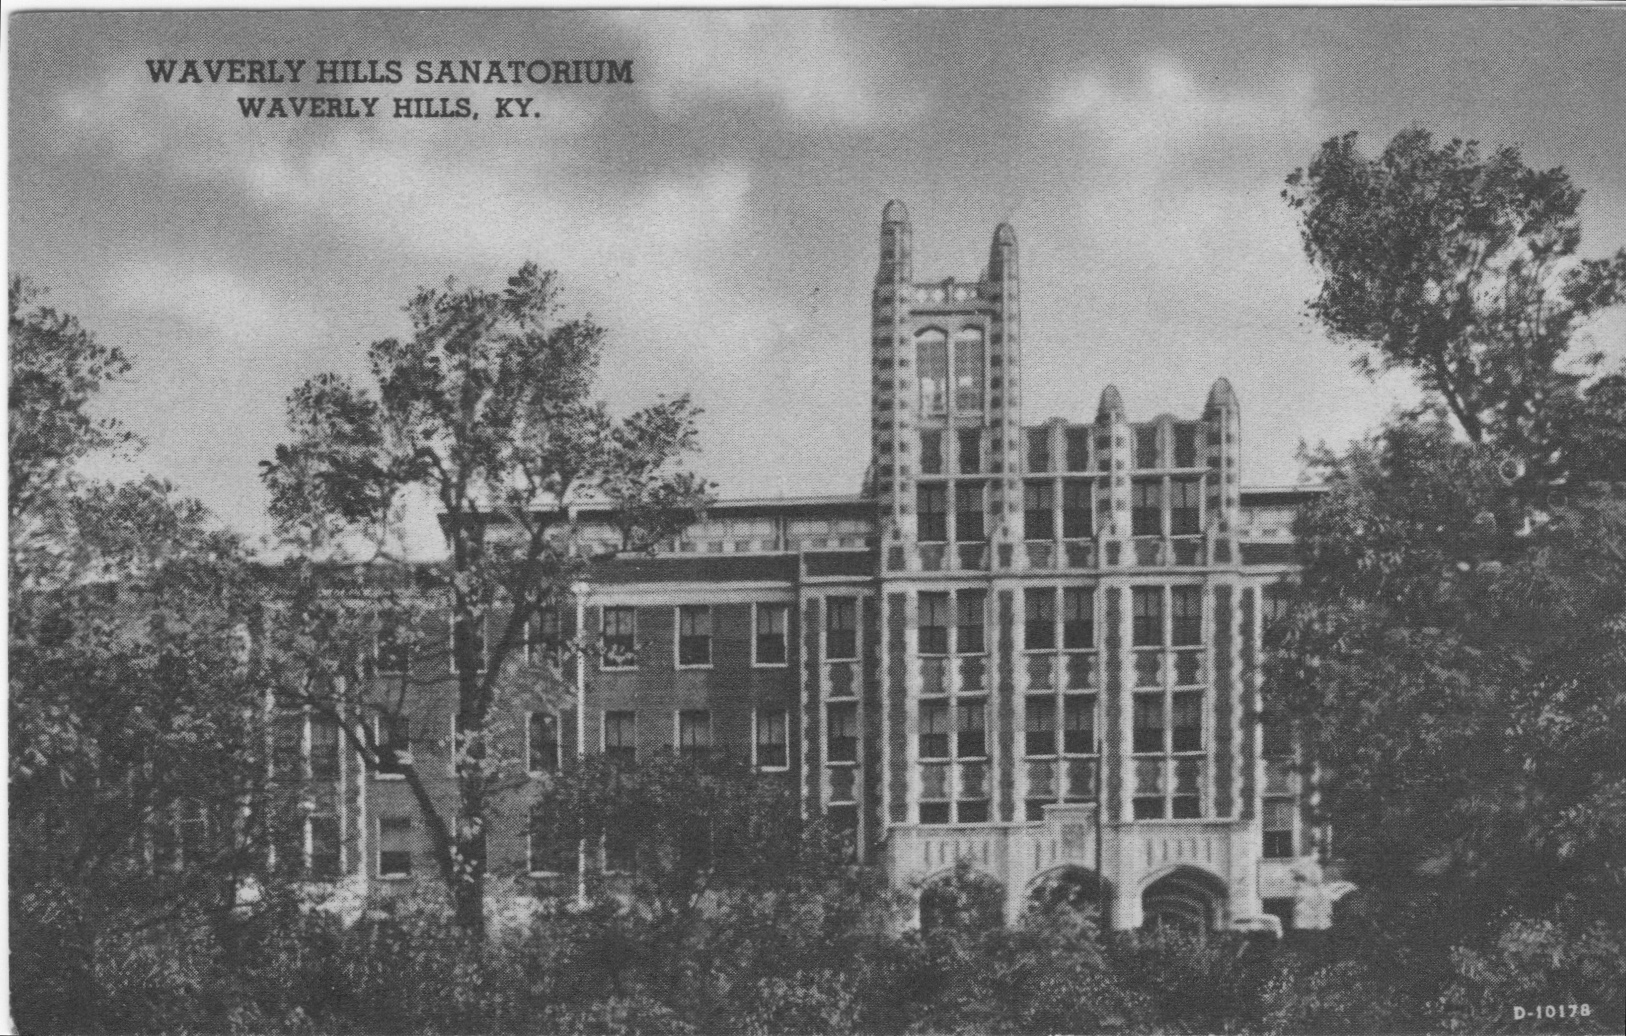 Waverly Hills Sanatorium in 1926.